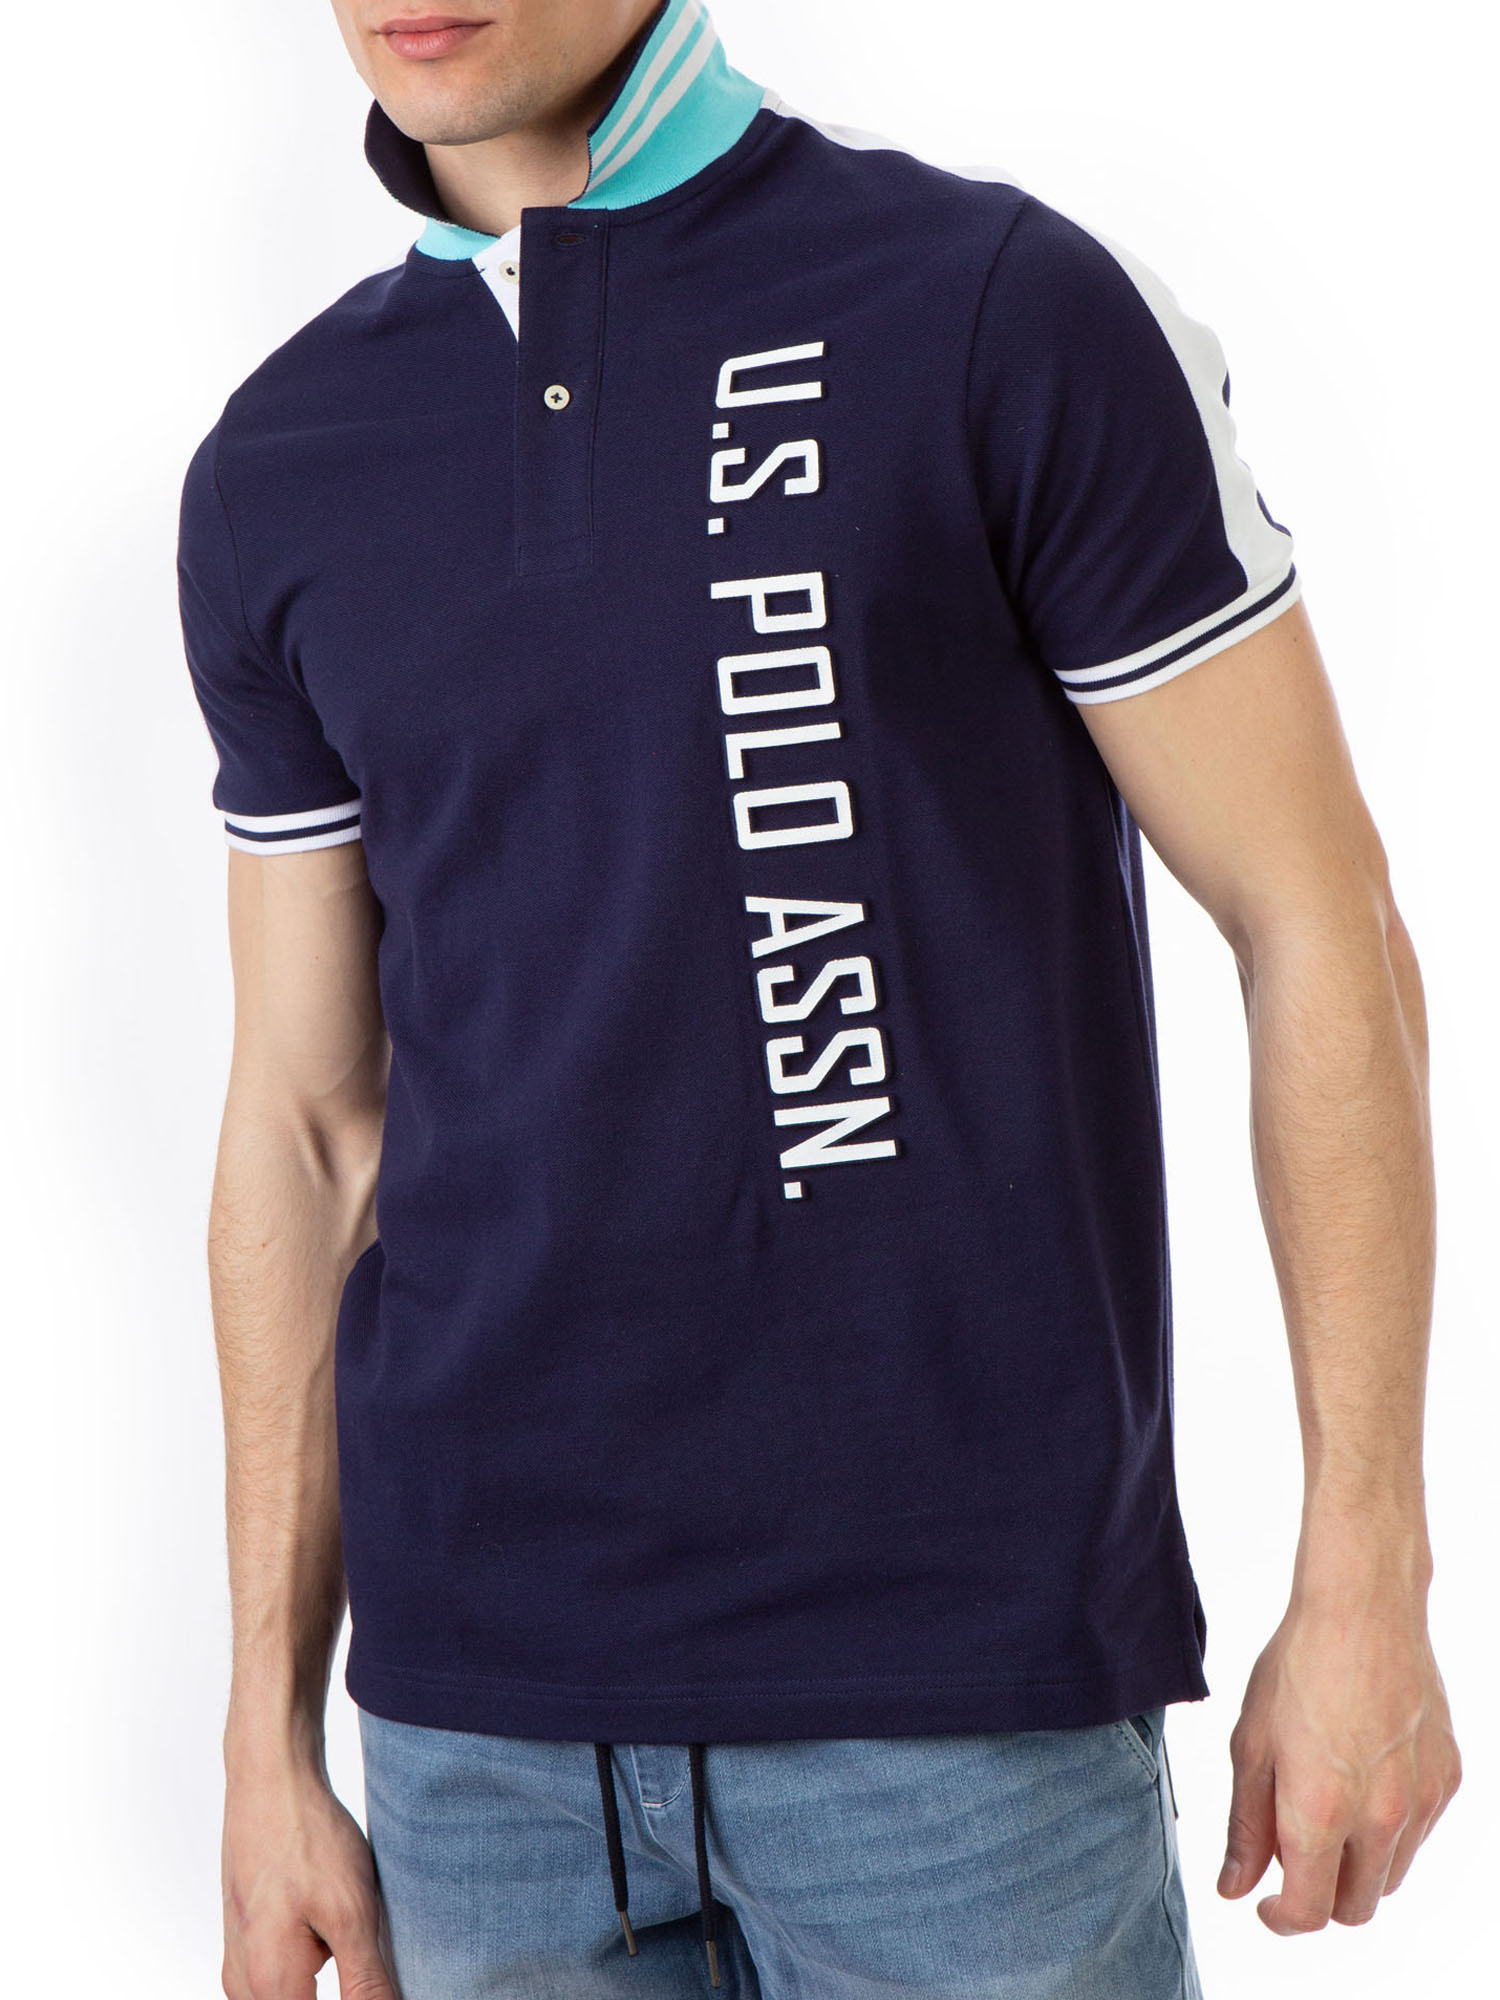 U.S. Polo Assn. Men's Embossed Logo Pique Polo Shirt - image 3 of 6